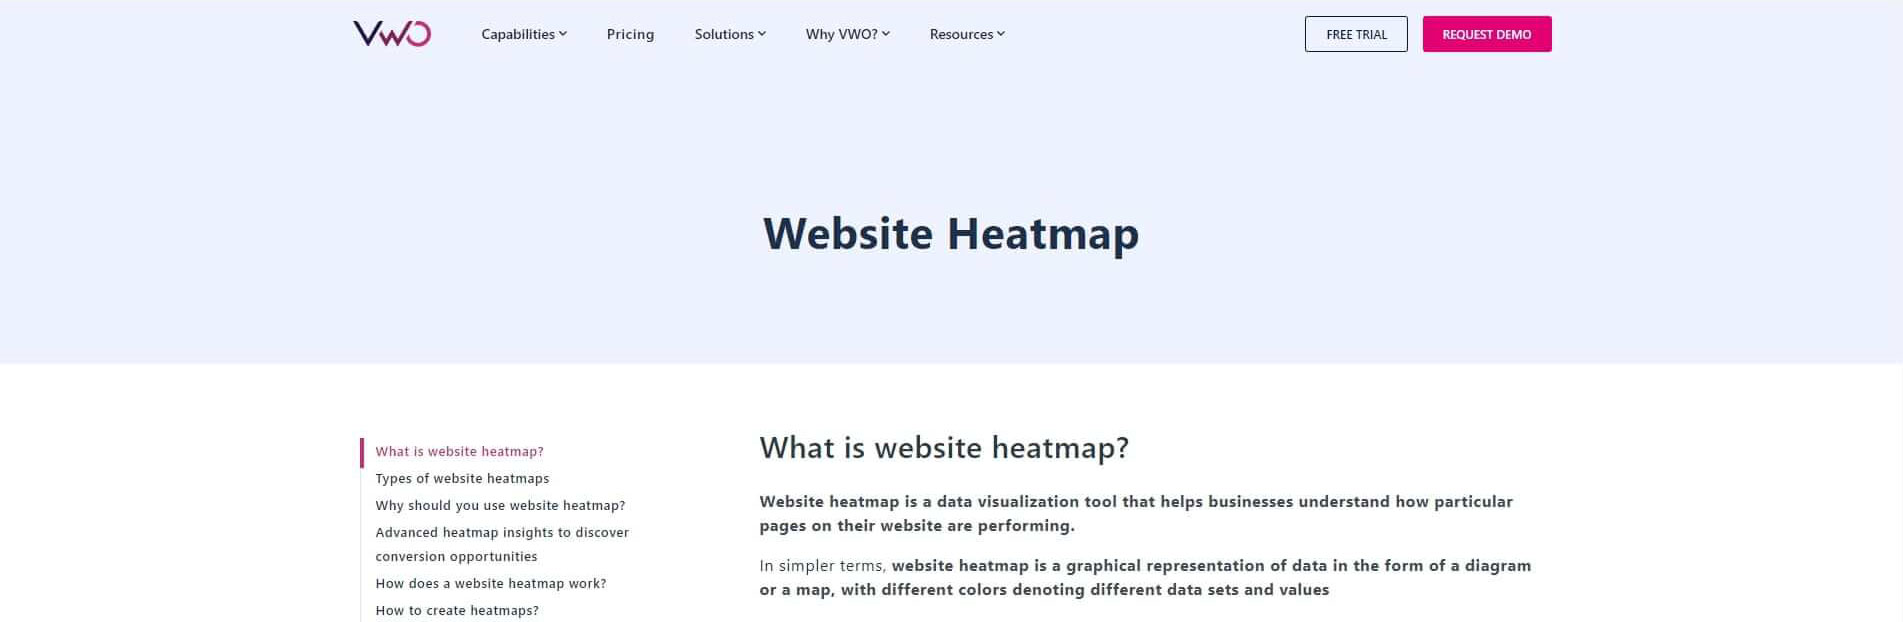 VWO Website Heatmap